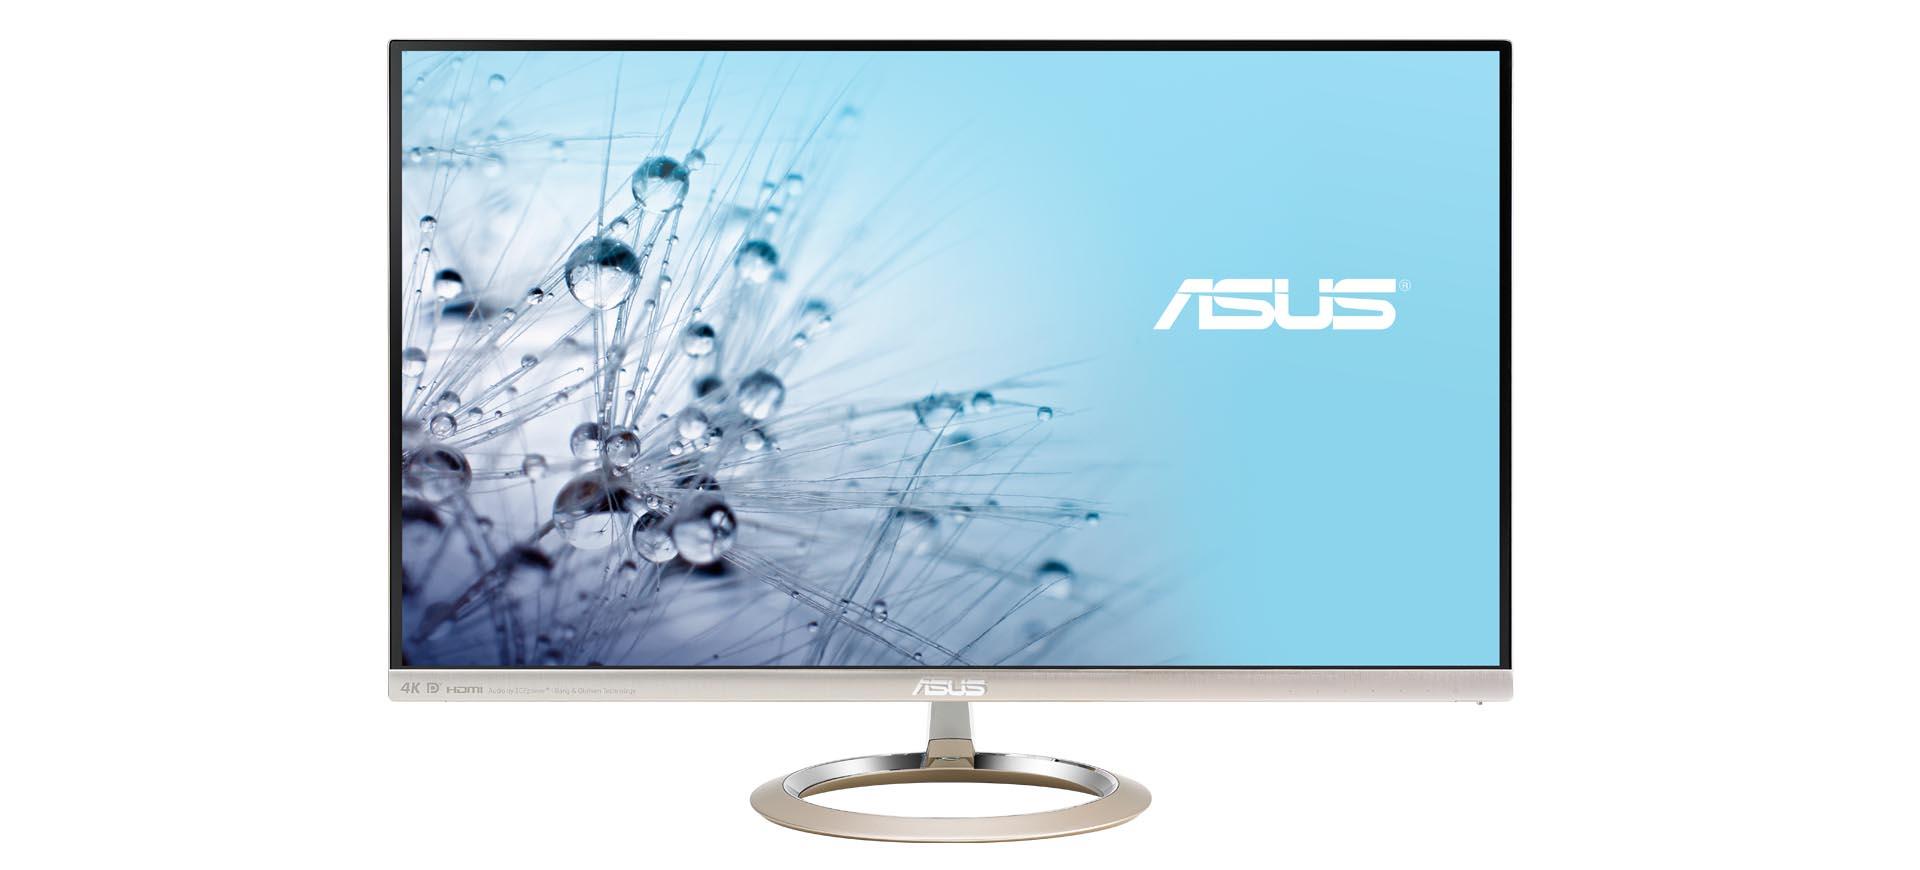 ASUS công bố màn hình Designo MX27UQ